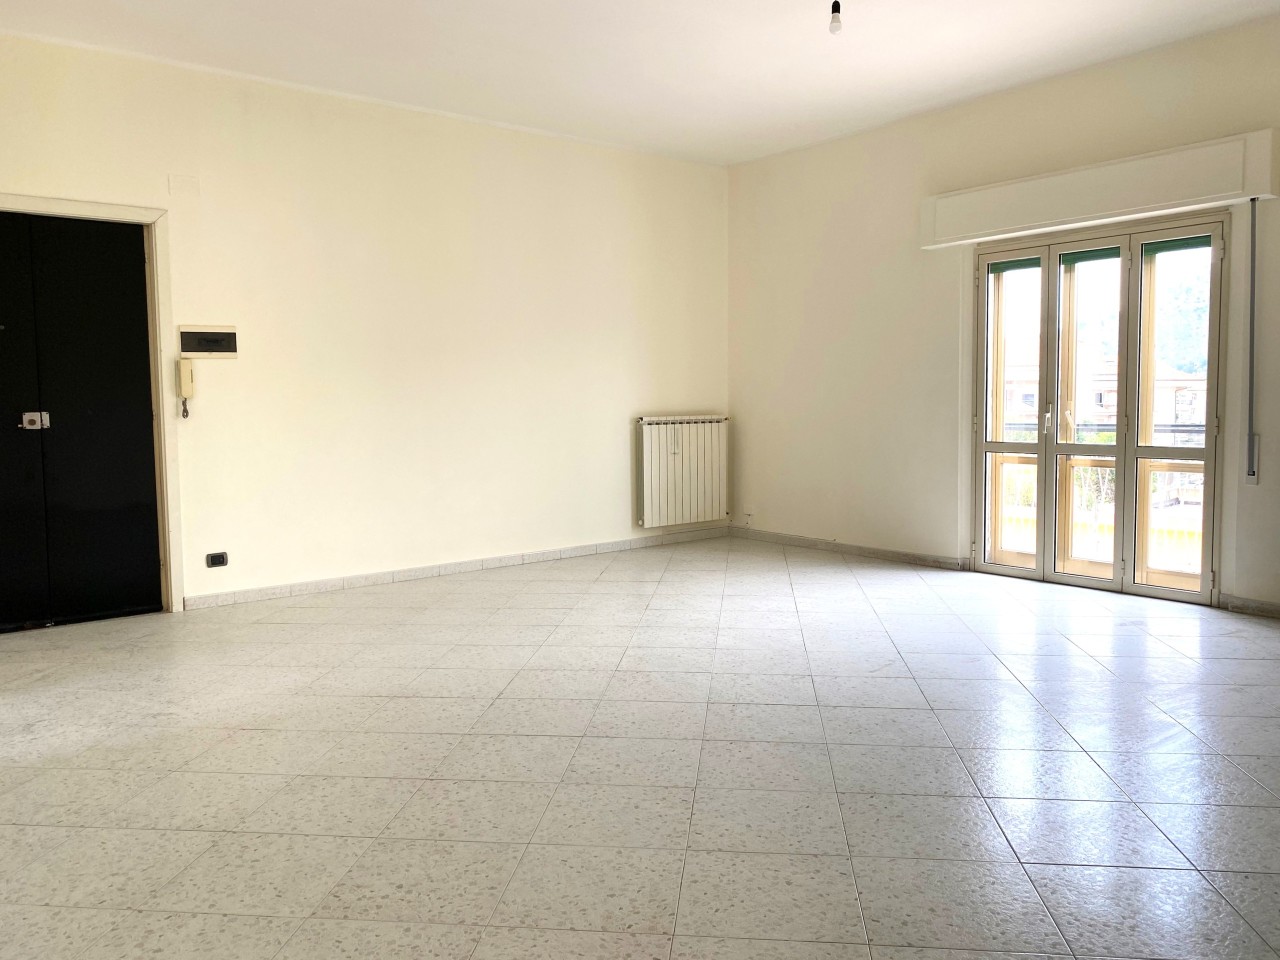 Appartamento in vendita a Squillace, 4 locali, prezzo € 95.000 | PortaleAgenzieImmobiliari.it